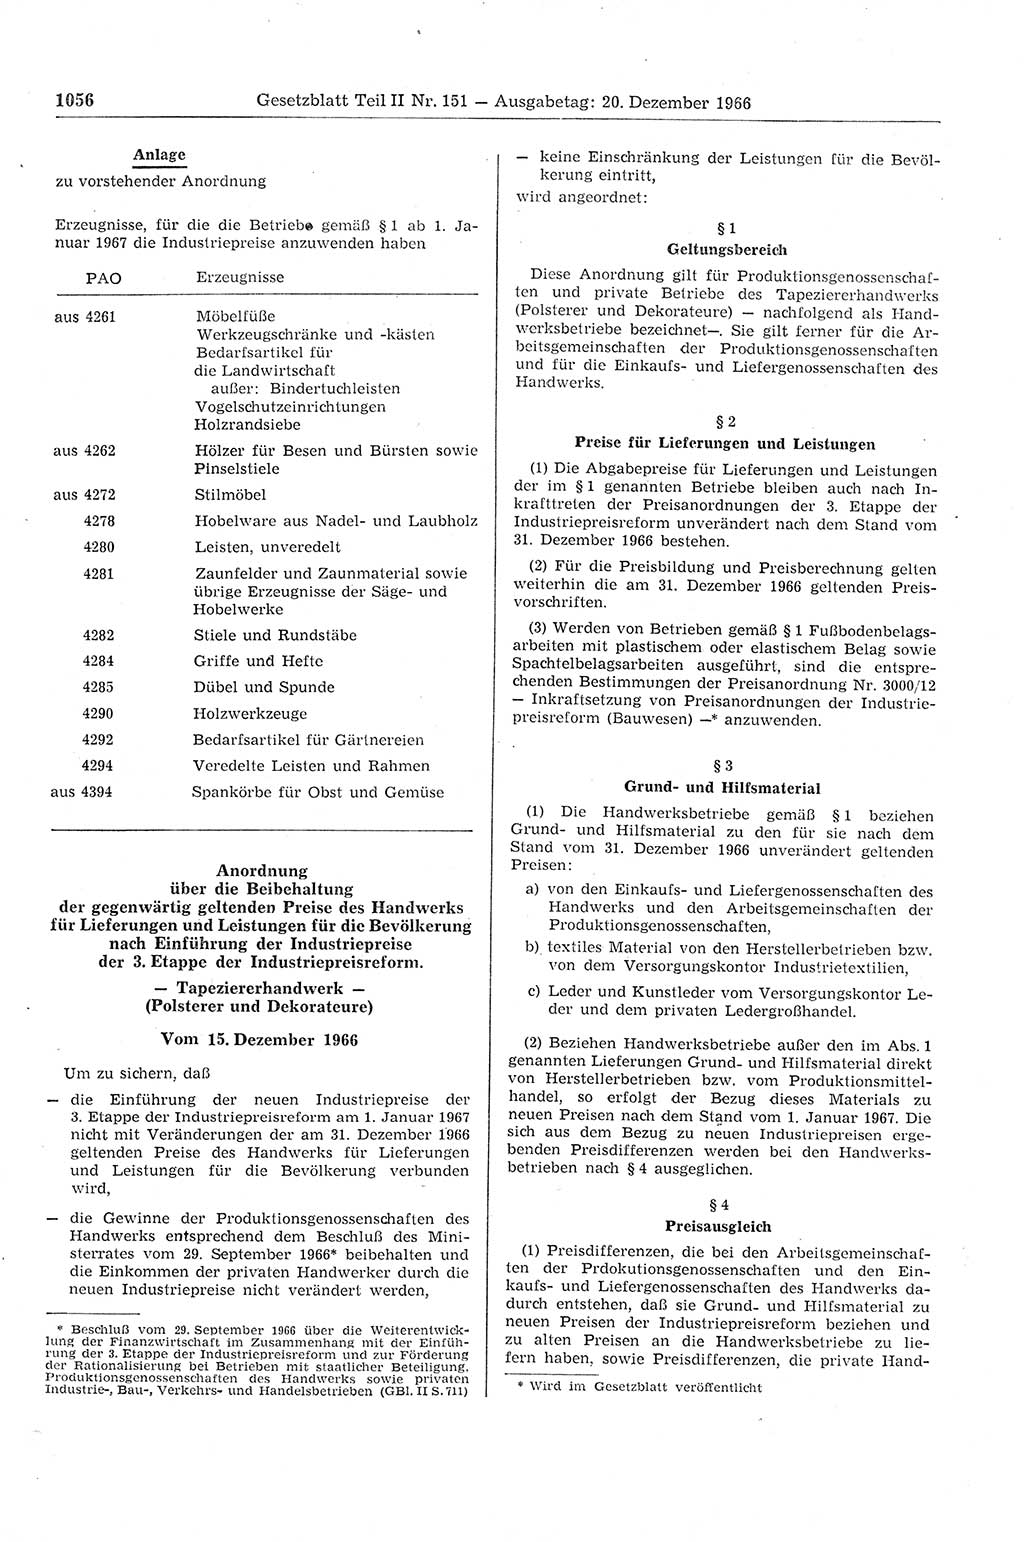 Gesetzblatt (GBl.) der Deutschen Demokratischen Republik (DDR) Teil ⅠⅠ 1966, Seite 1056 (GBl. DDR ⅠⅠ 1966, S. 1056)